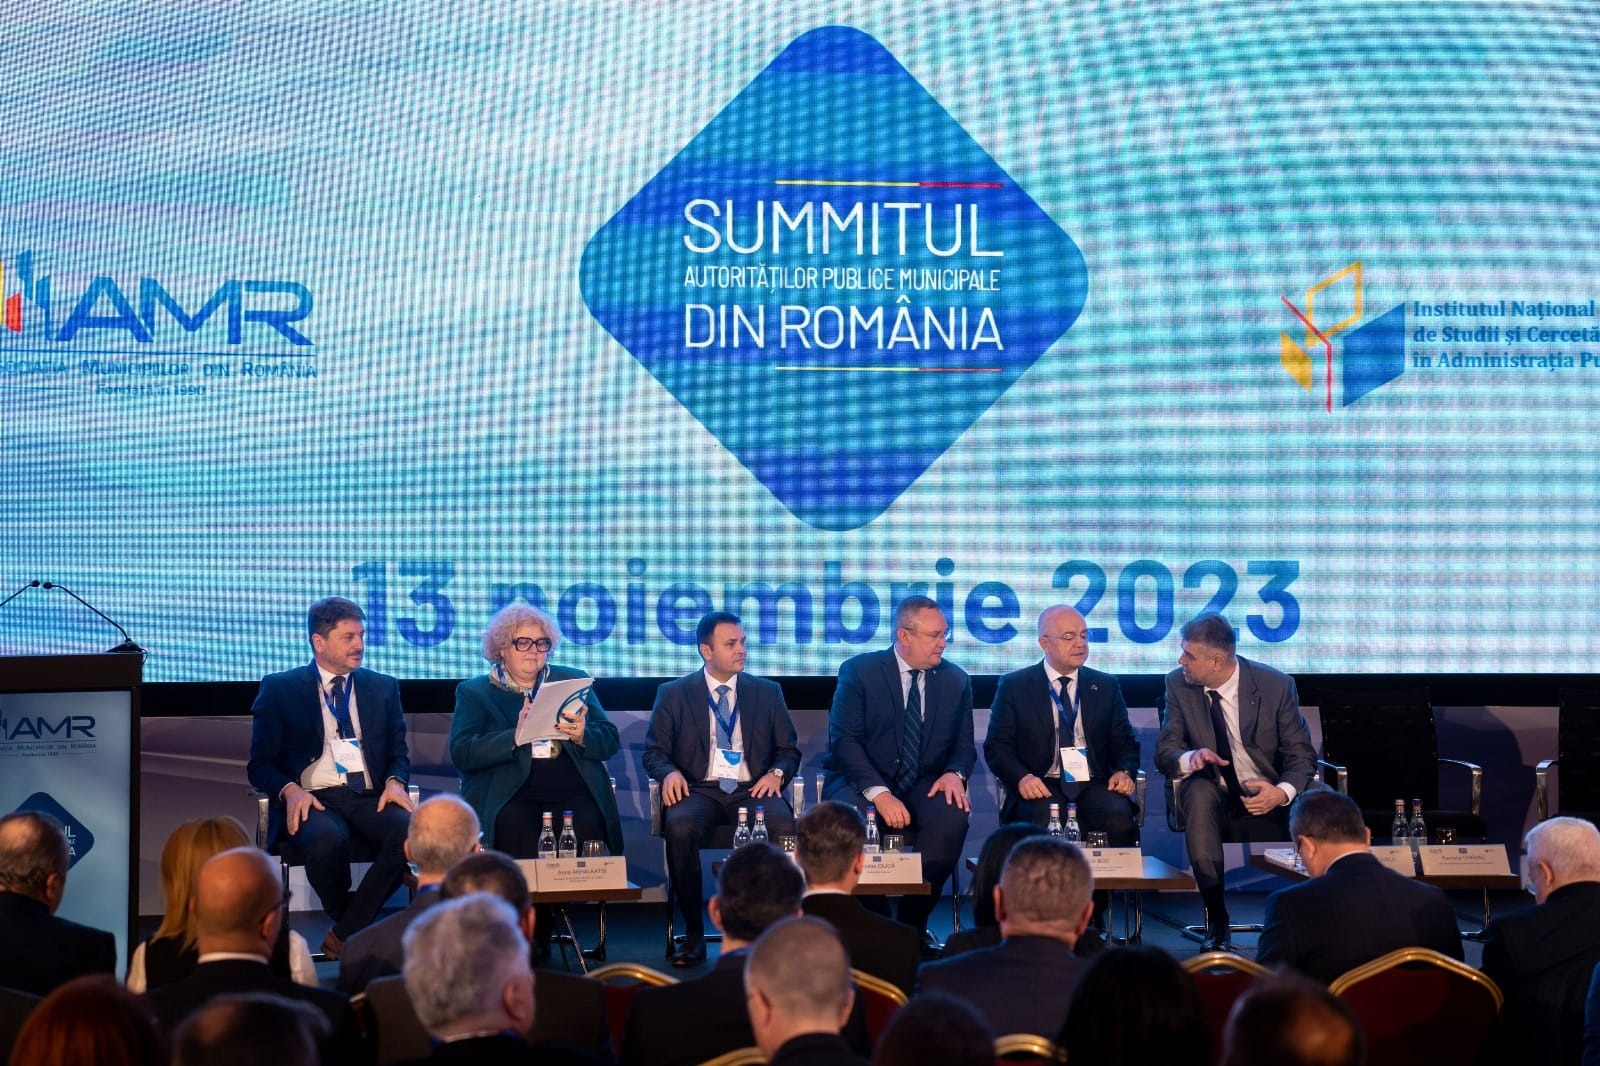 Nicolae Ionel Ciucă, președintele PNL, mesaj către primari:”Am convingerea că dezvoltarea accelerată a țării nu se poate realiza în absența unui avans susținut al comunităților locale”